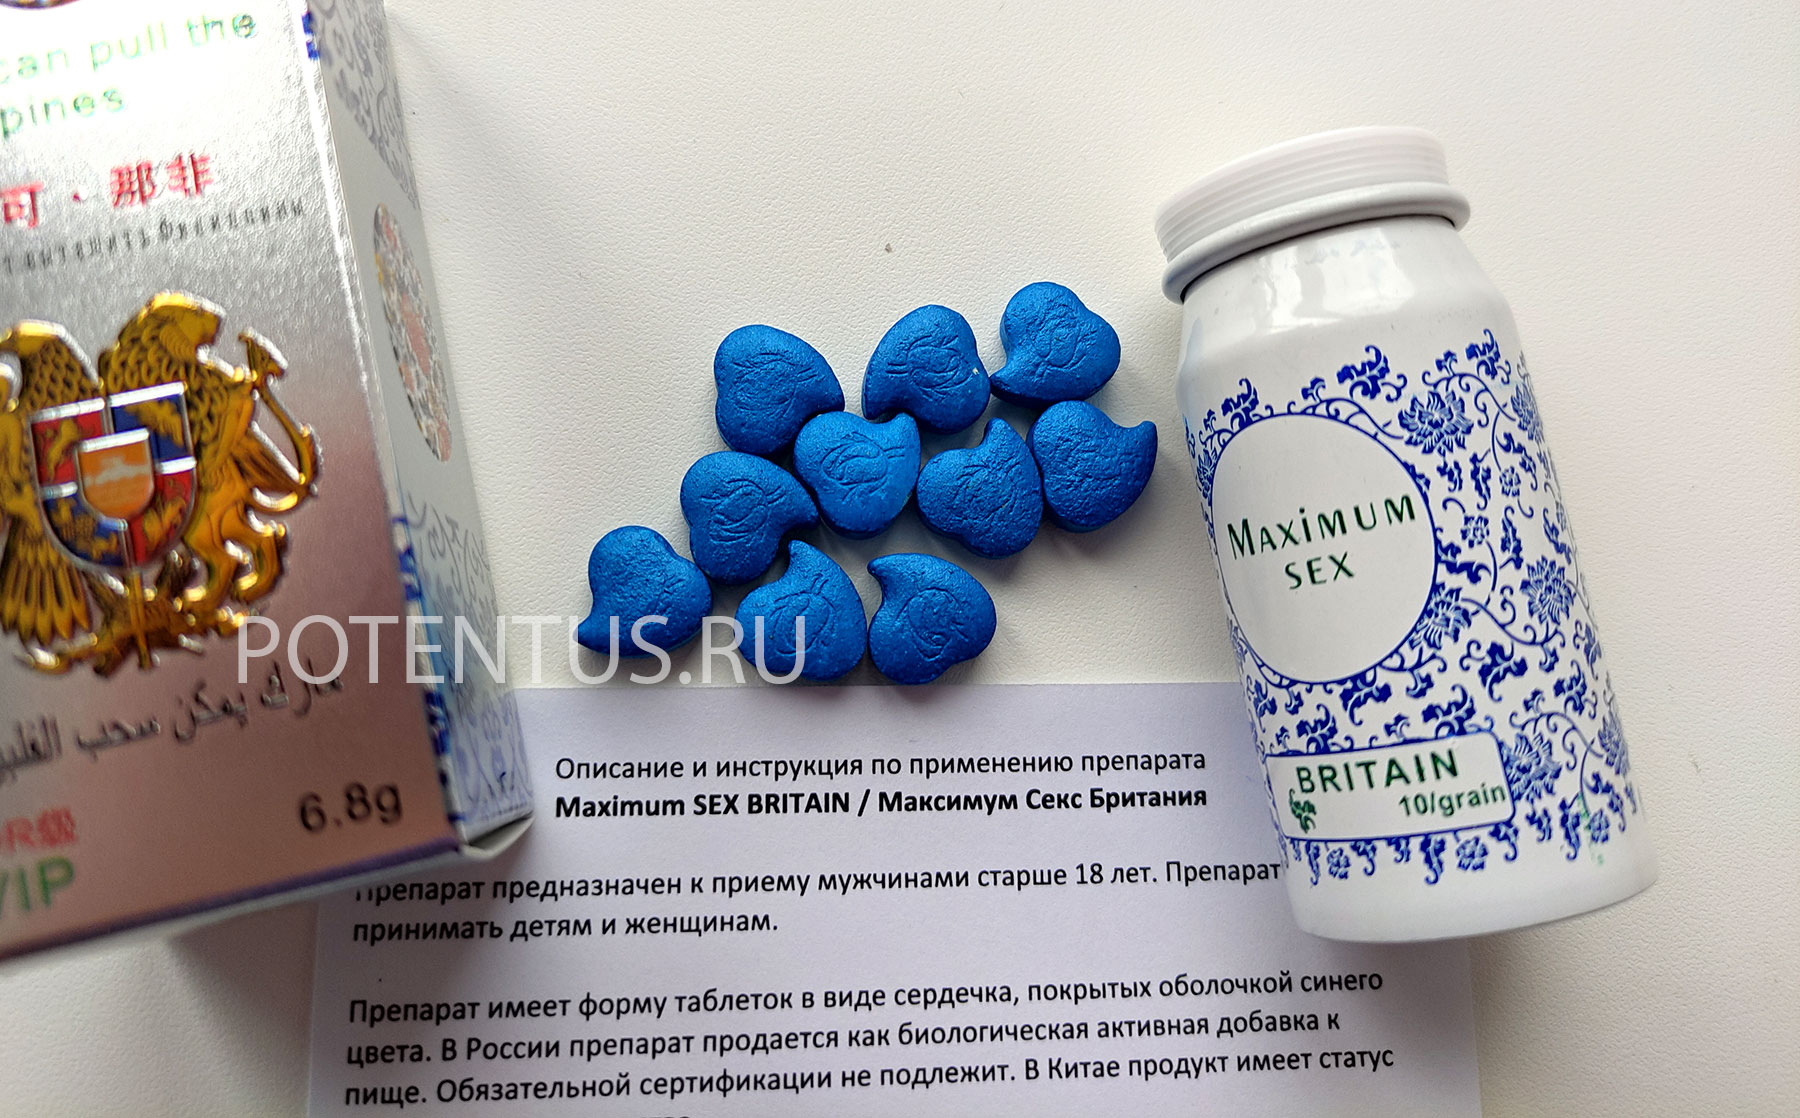 Купить препарат оригинал Максимальный секс 10 таб с инструкцией на русском языке.